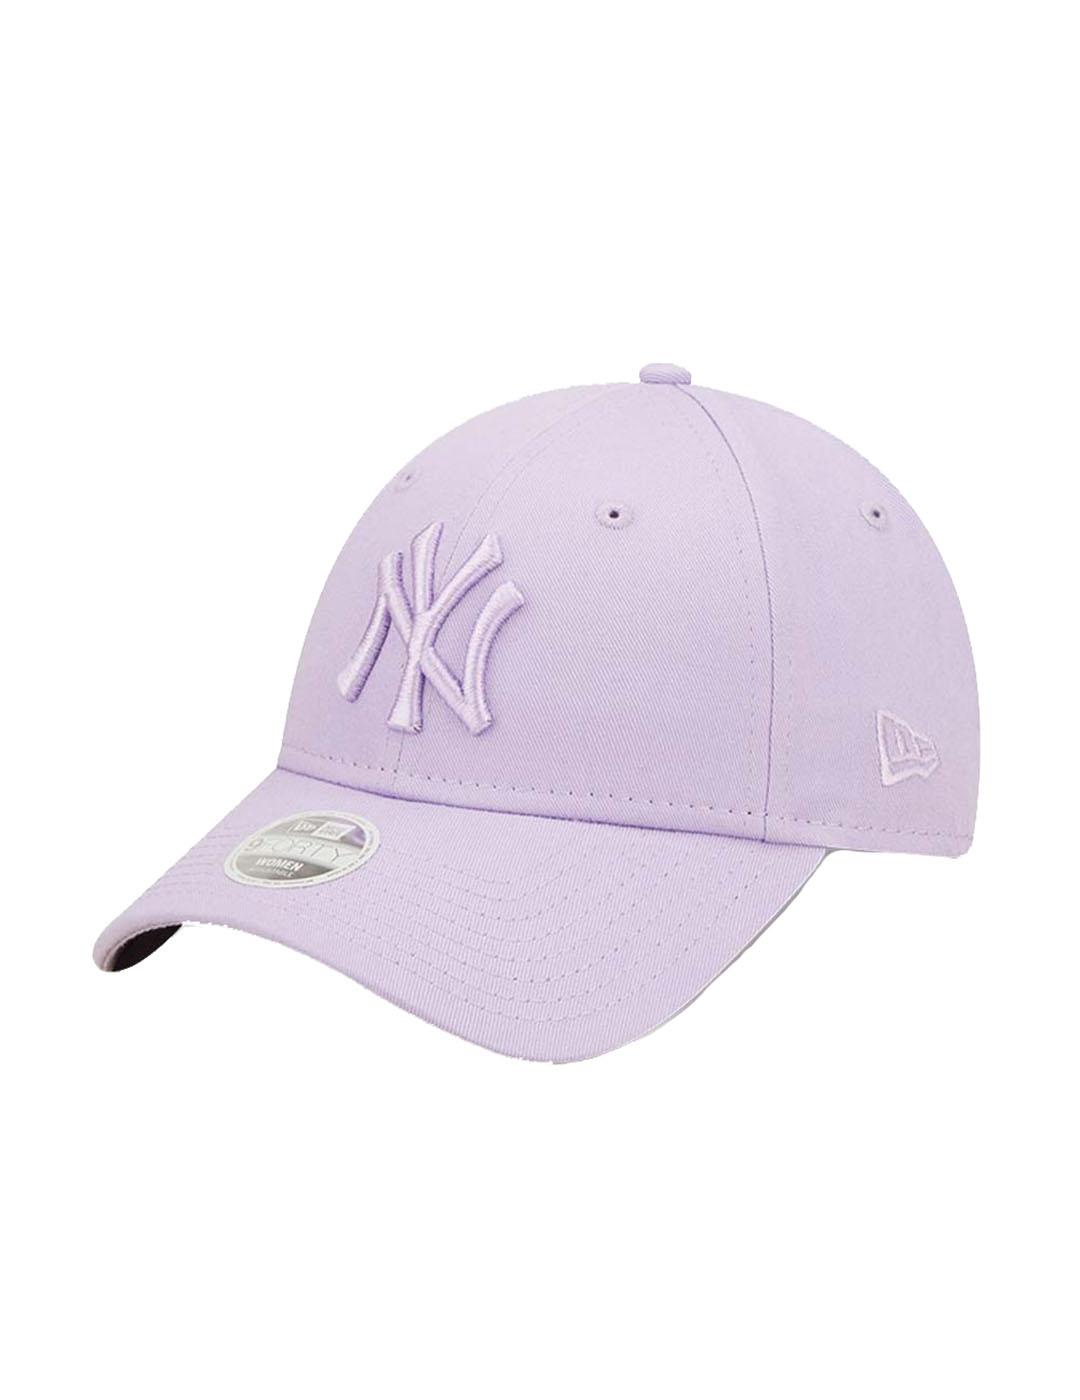 Gorra de béisbol rosa 940 de New Era de los NY Yankees para mujer